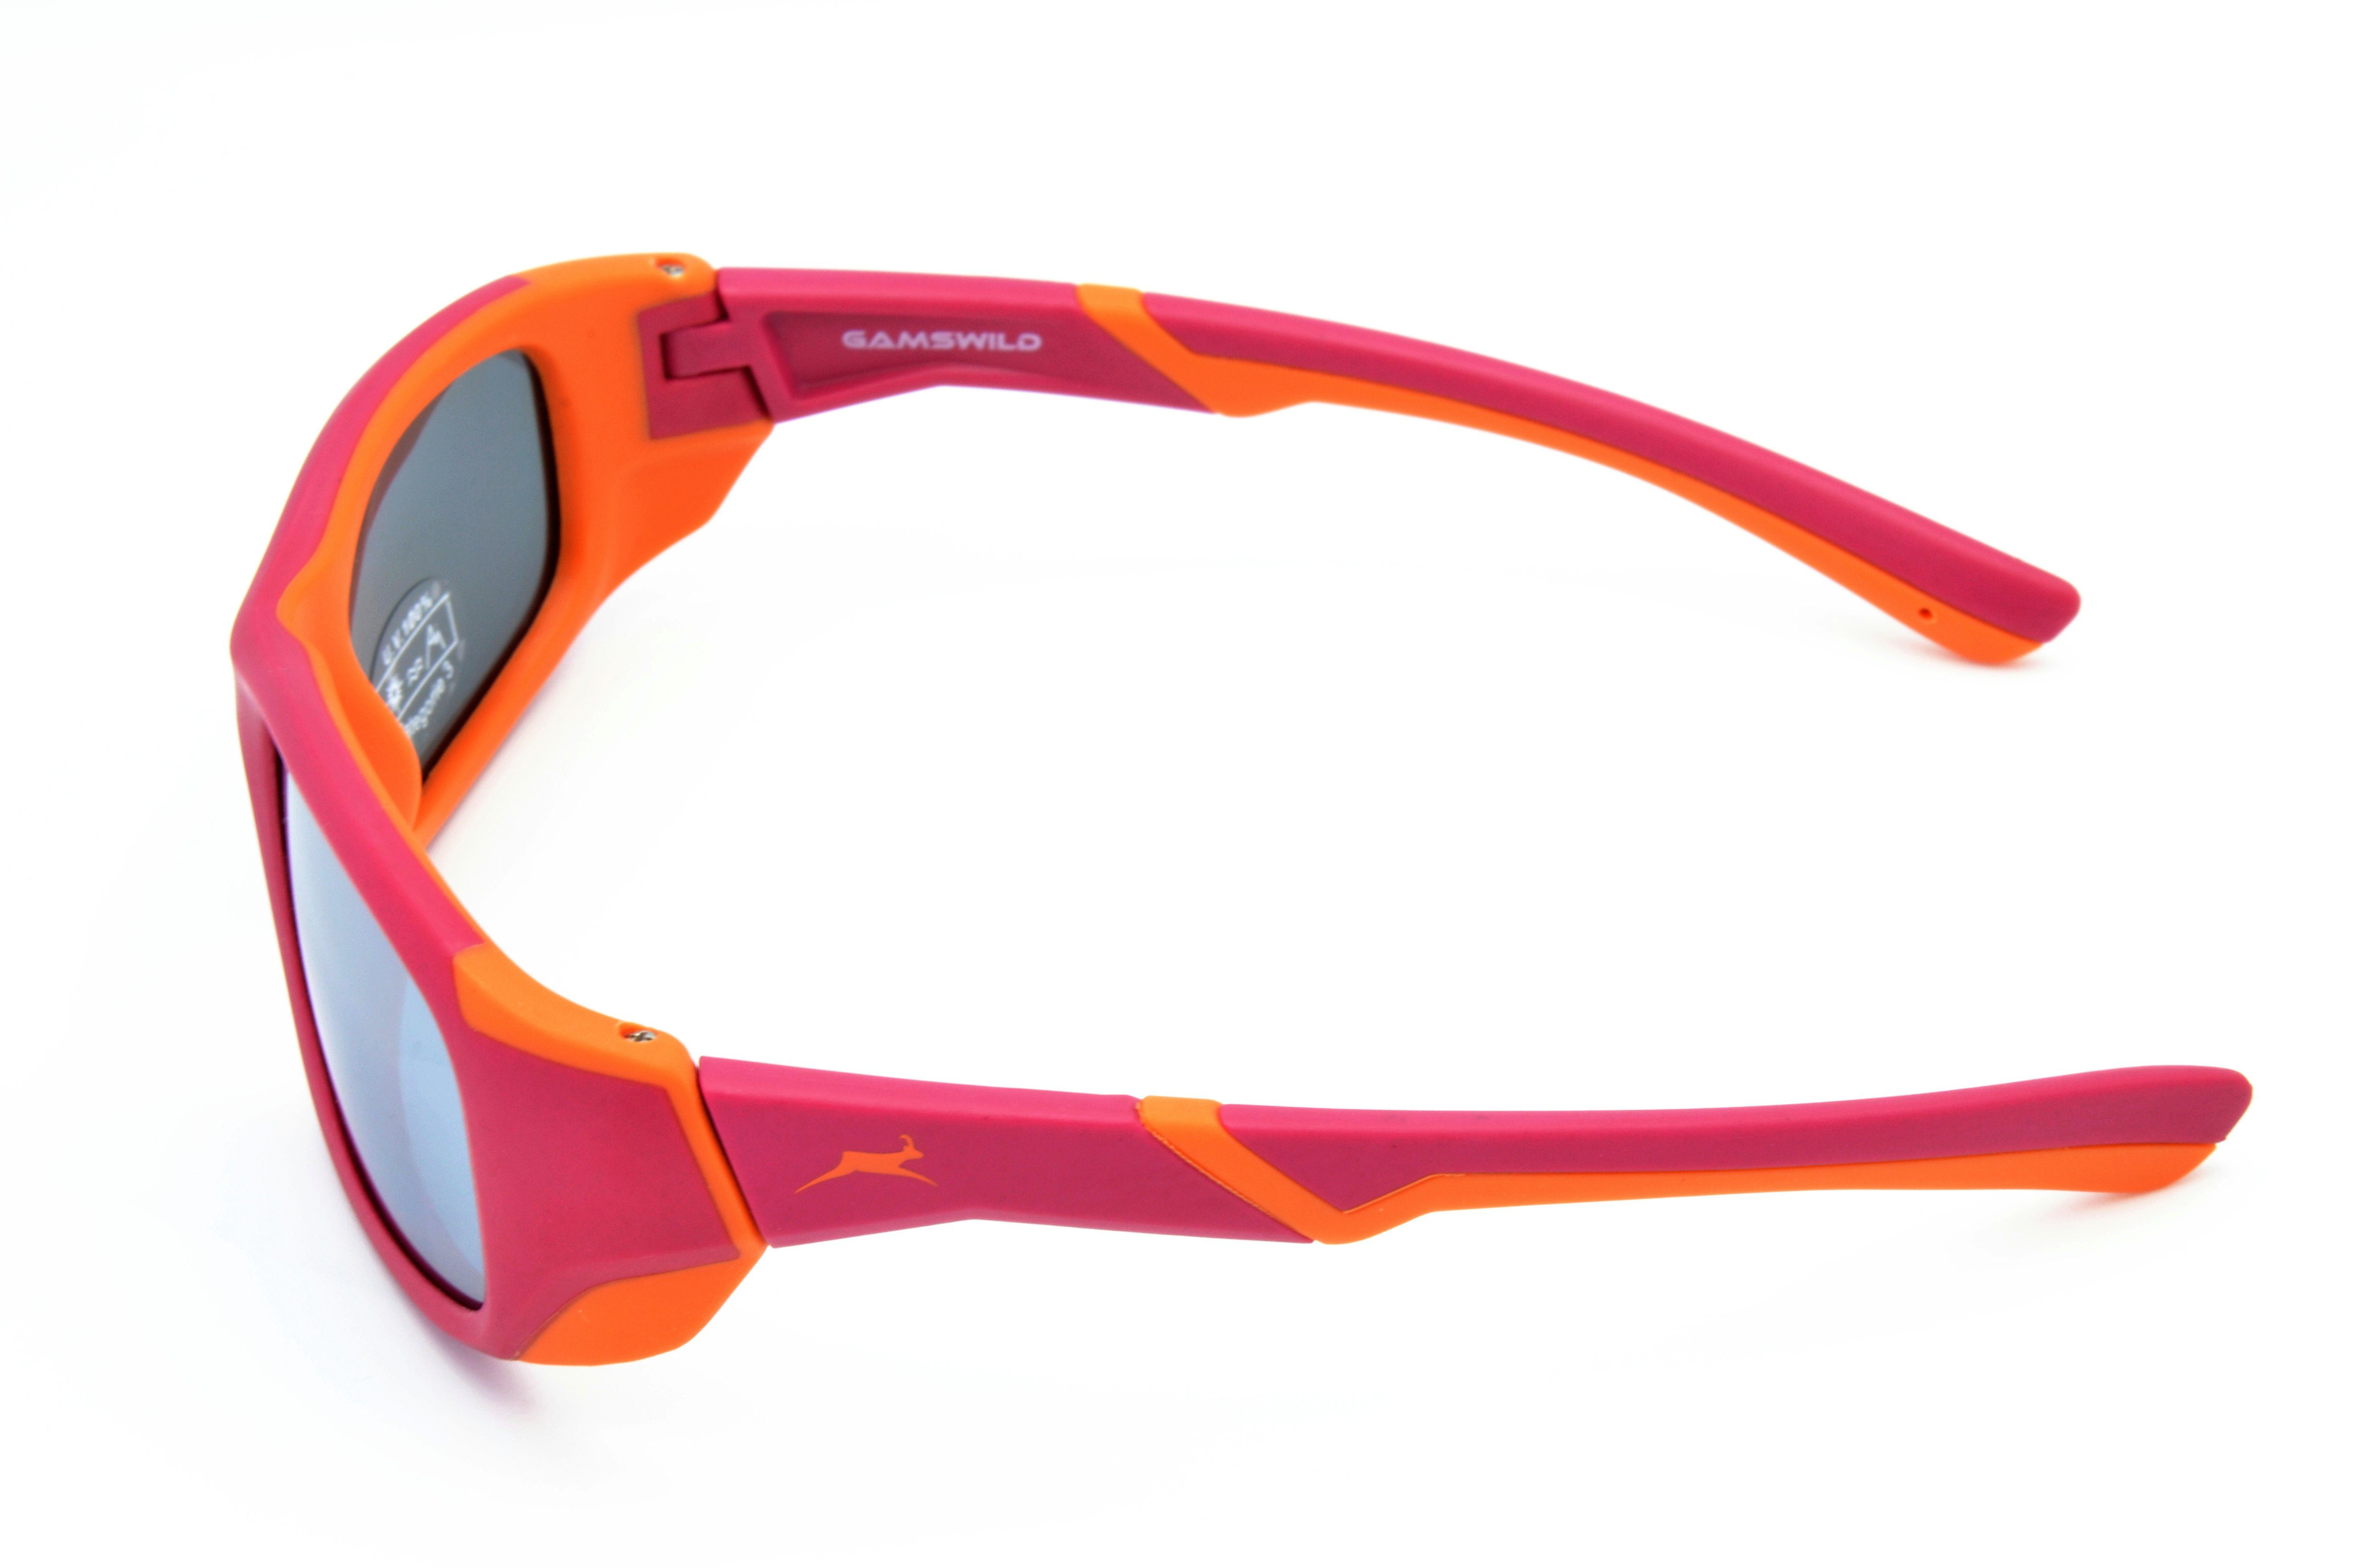 Unisex, Sonnenbrille grau, 6-12 super Jungen Gamswild - Jahre WJ5119 Mädchen dunkelrot orange, - Jugendbrille GAMSKIDS flexible Kinderbrille blau -orange Bügel grün